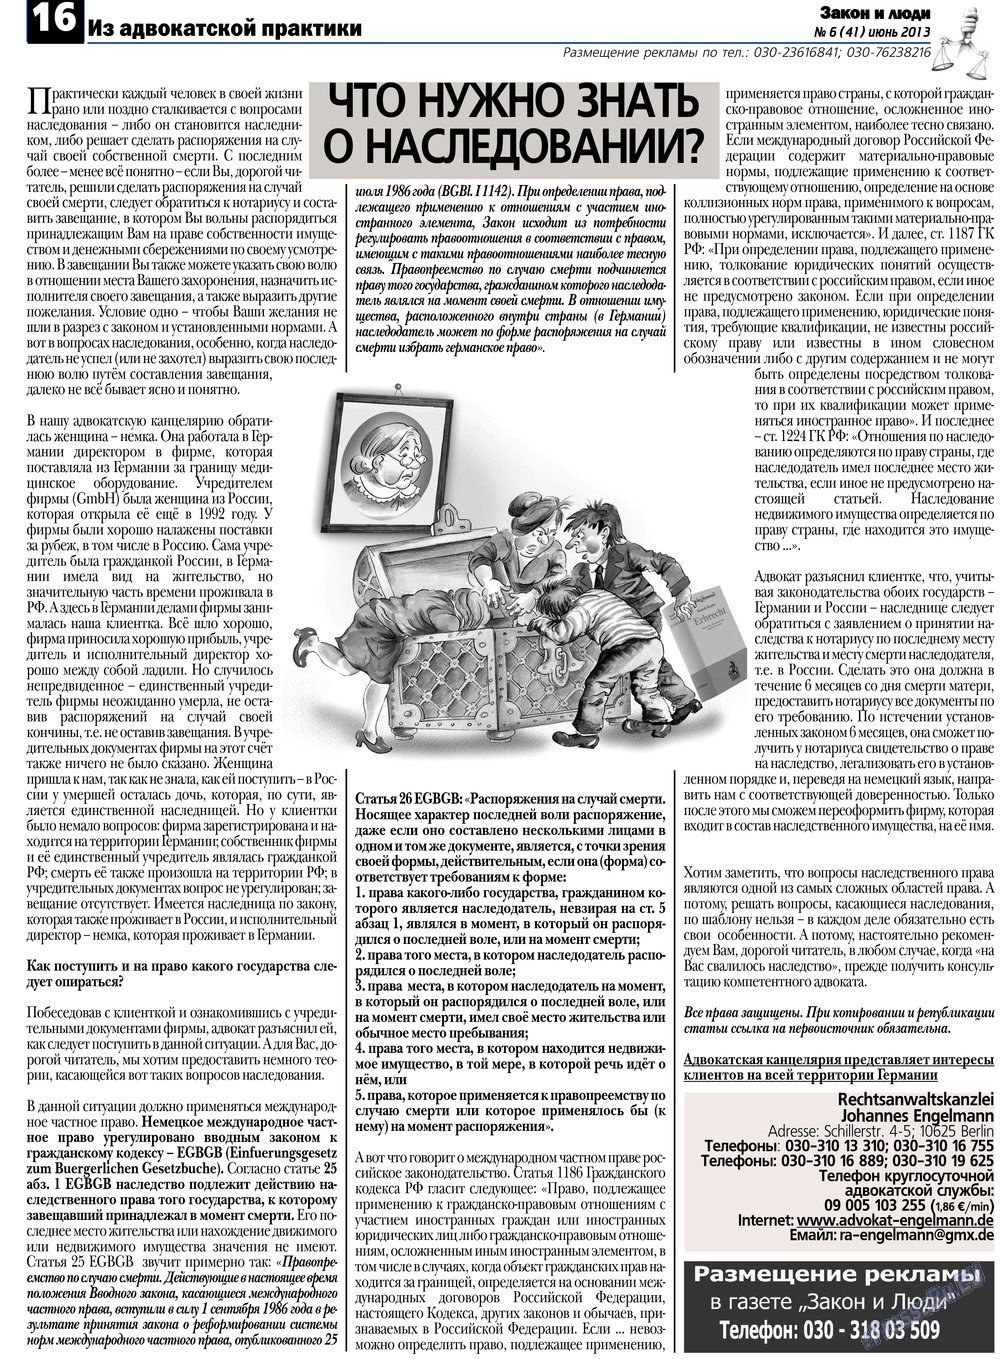 Закон и люди, газета. 2013 №6 стр.16